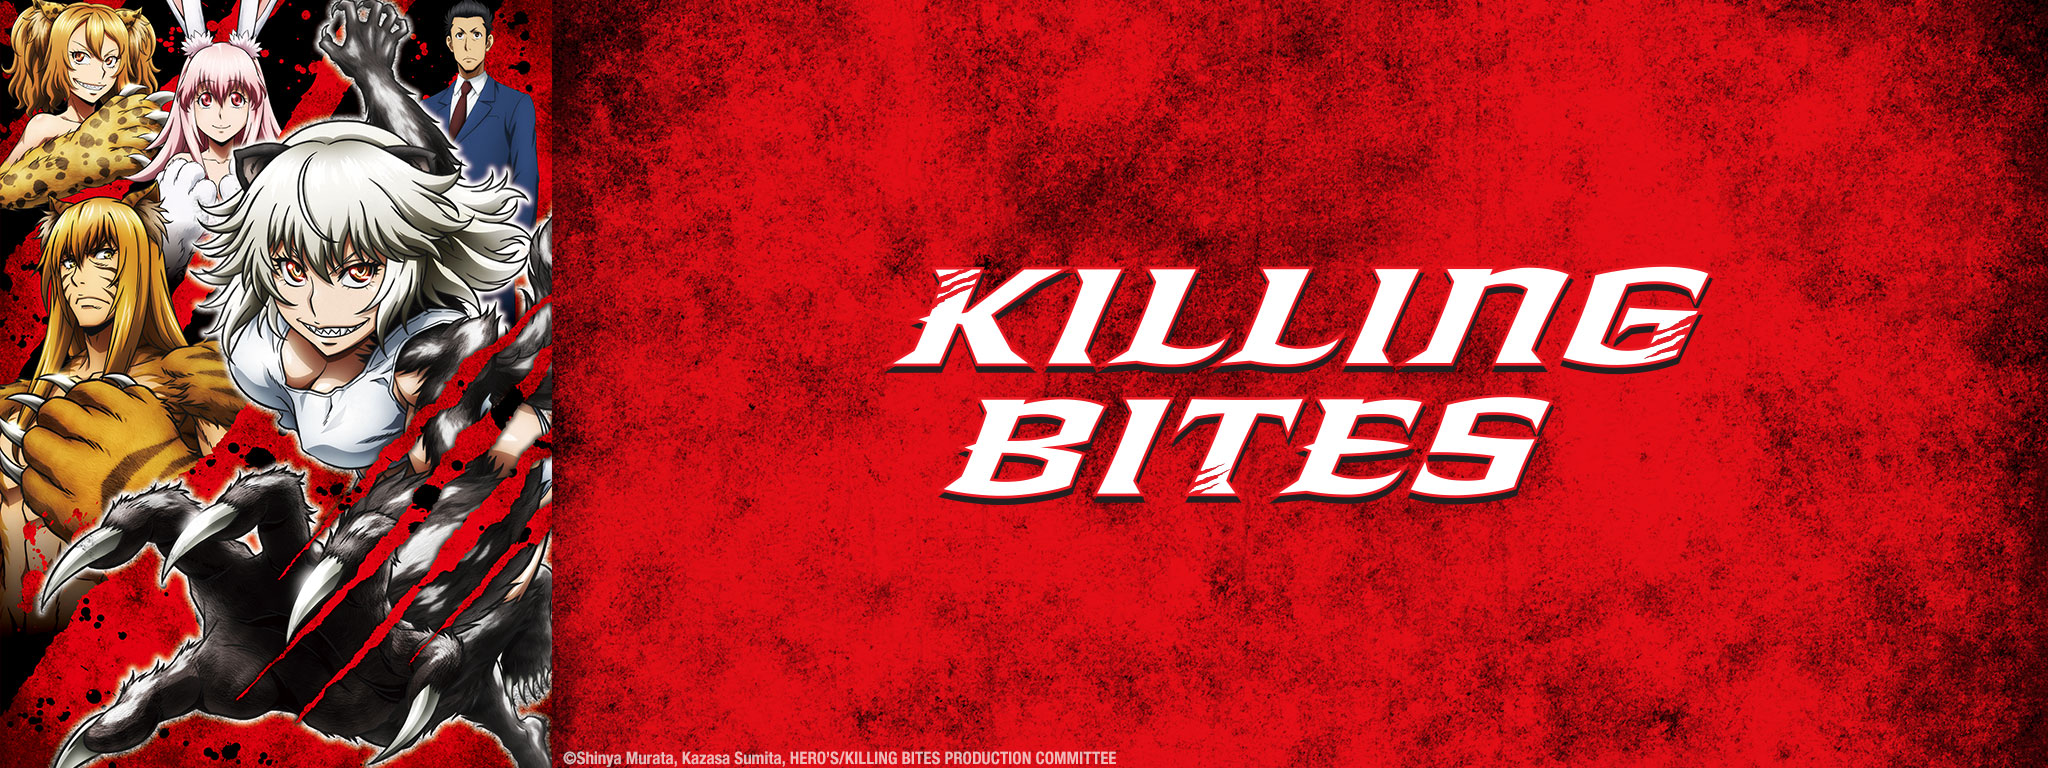 Killing Bites Blu-ray